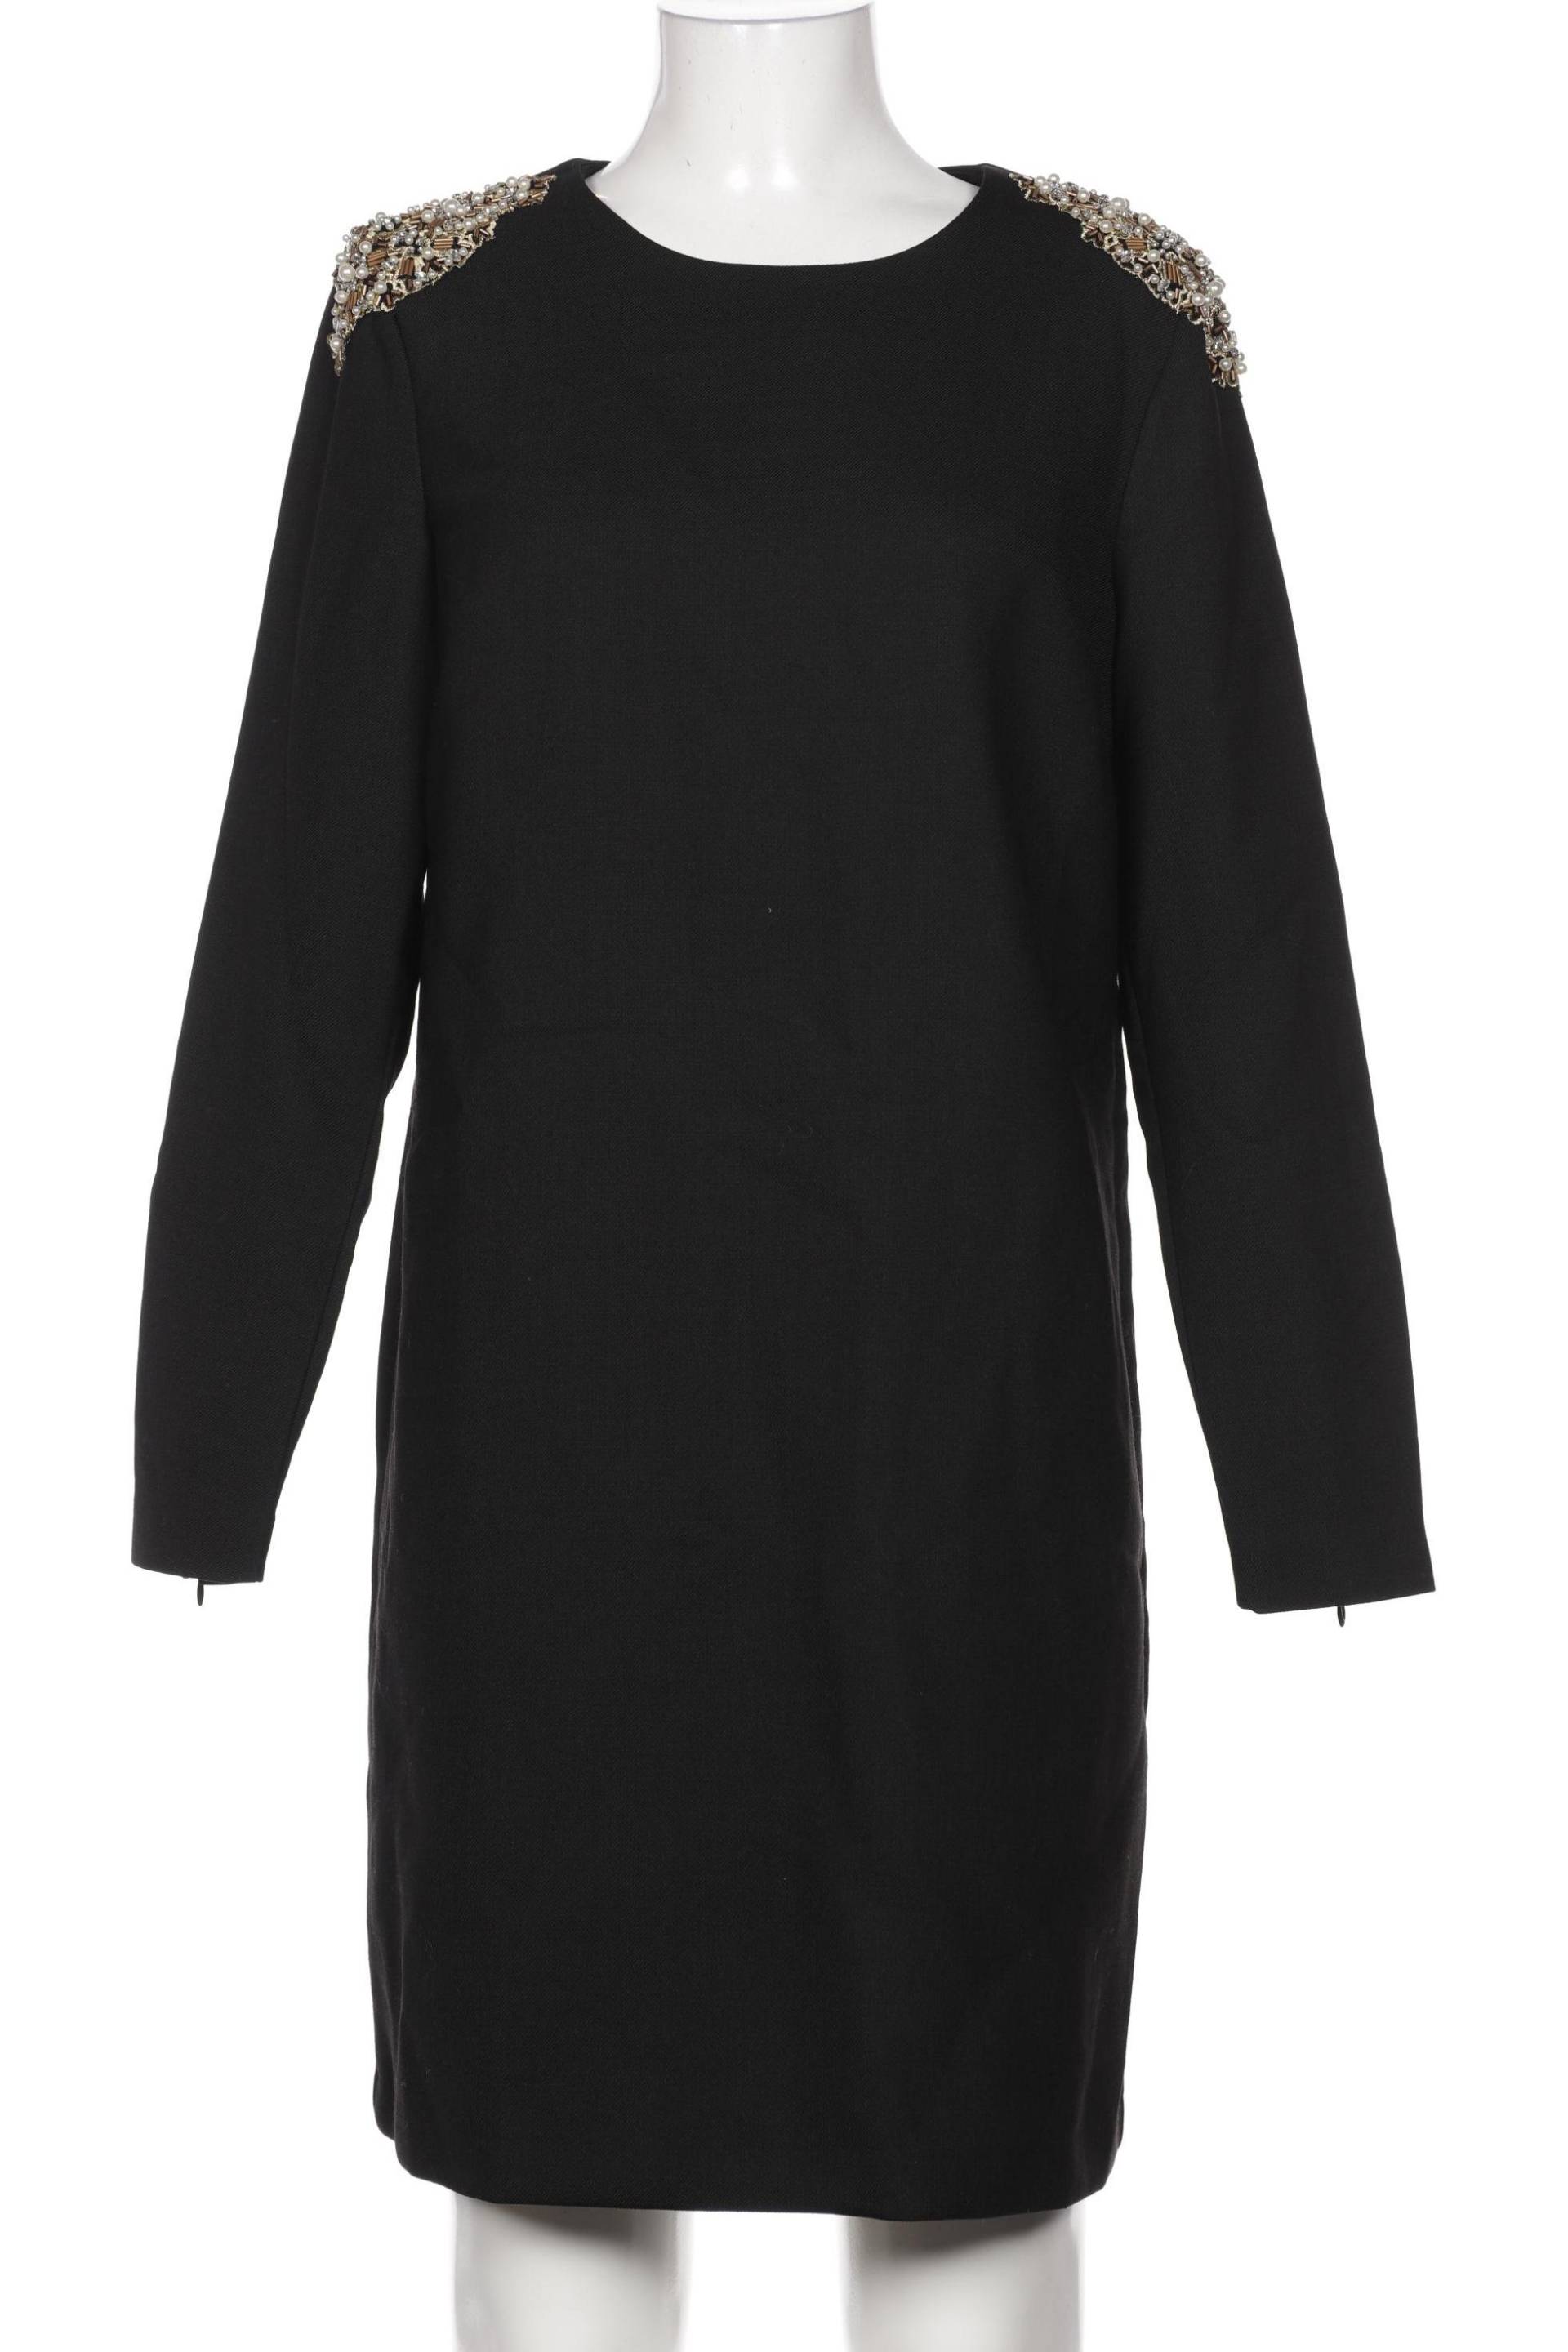 Boden Damen Kleid, schwarz, Gr. 40 von Boden